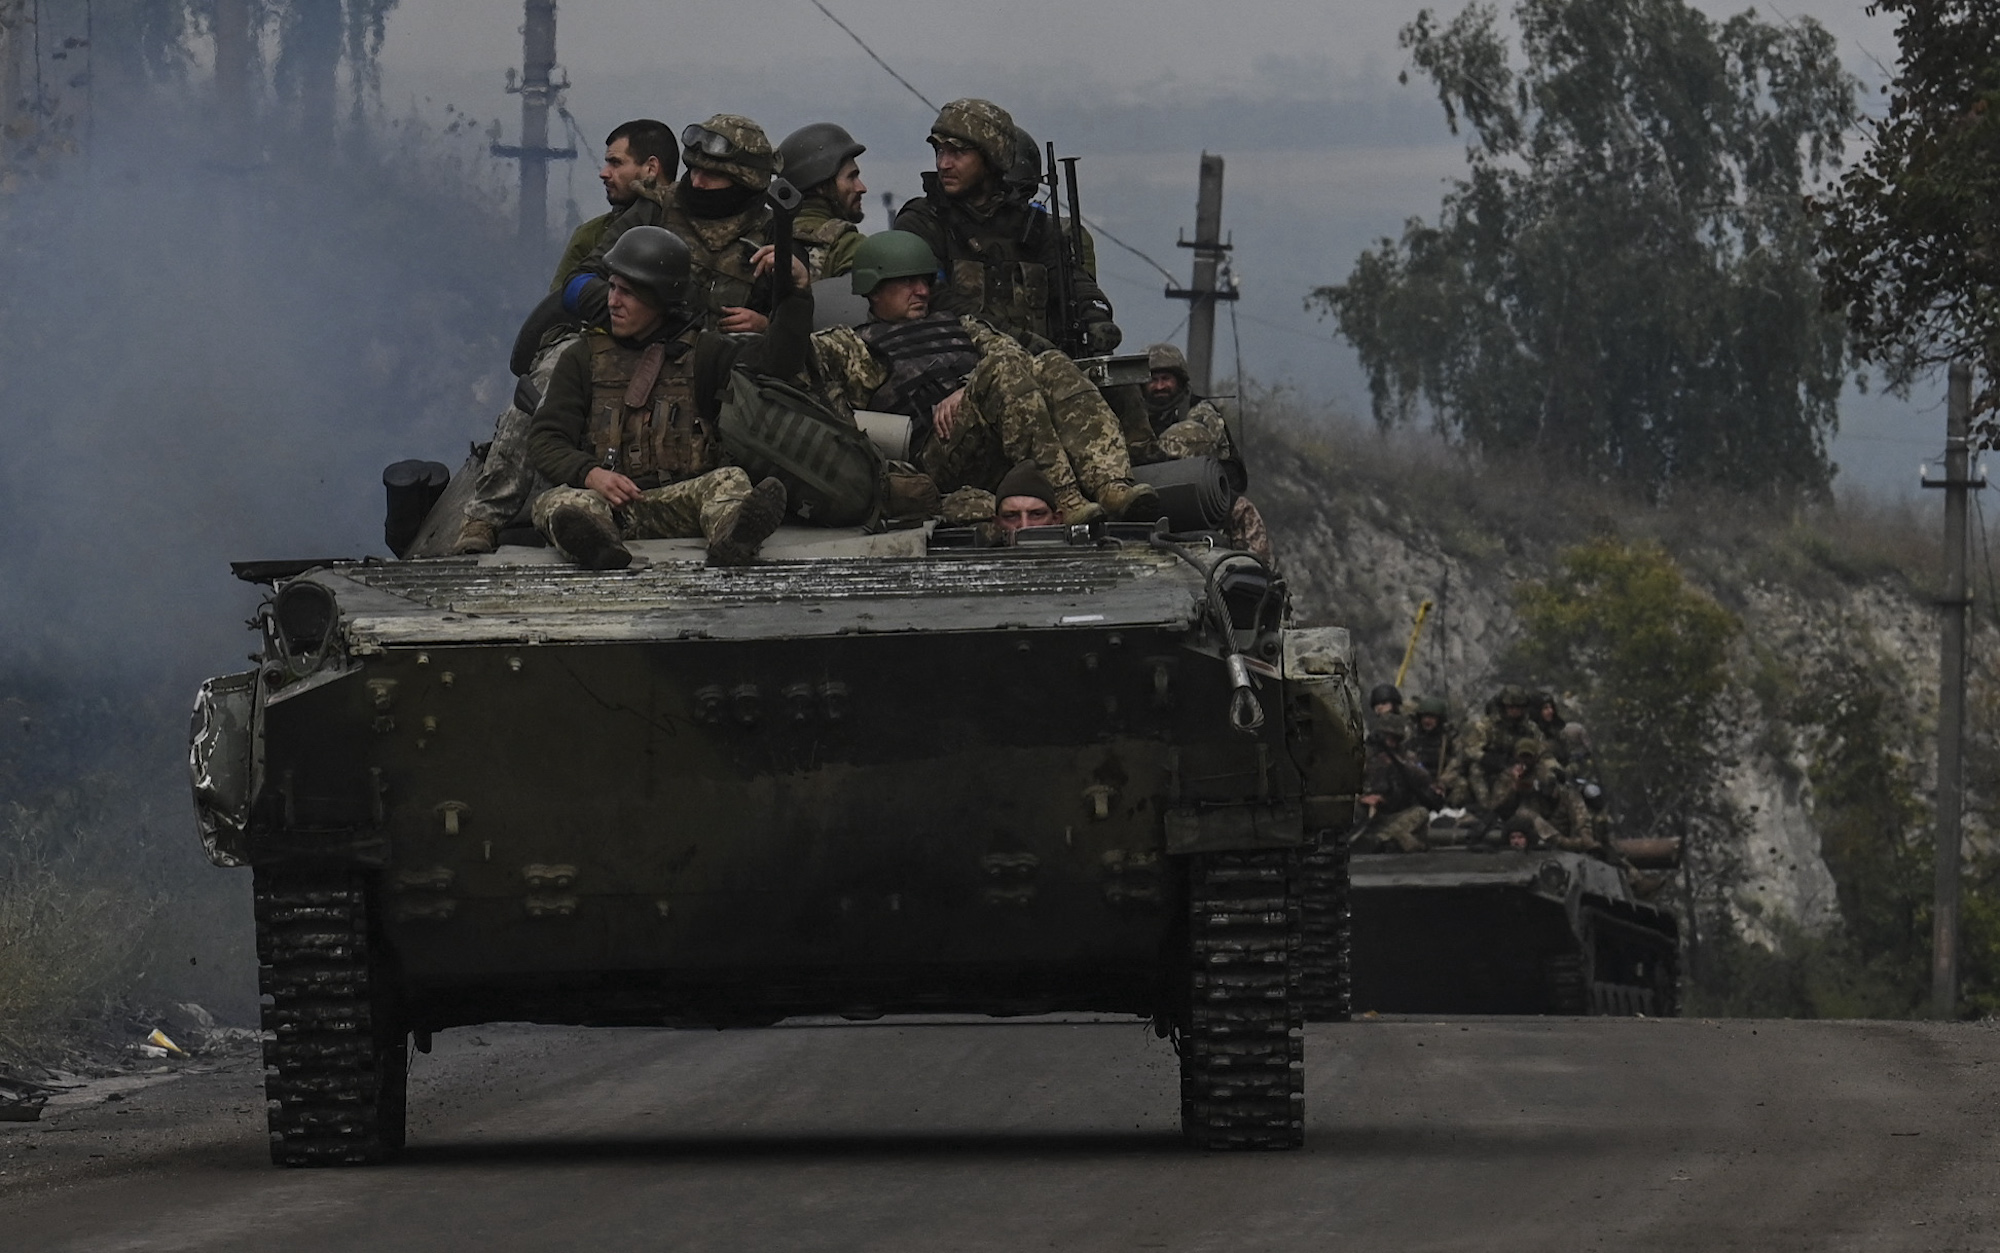 جنود أوكرانيون يجلسون على عربات مشاة أثناء قيادتهم للسيارات بالقرب من إيزيوم ، في خاركيف أوبلاست في 16 سبتمبر.